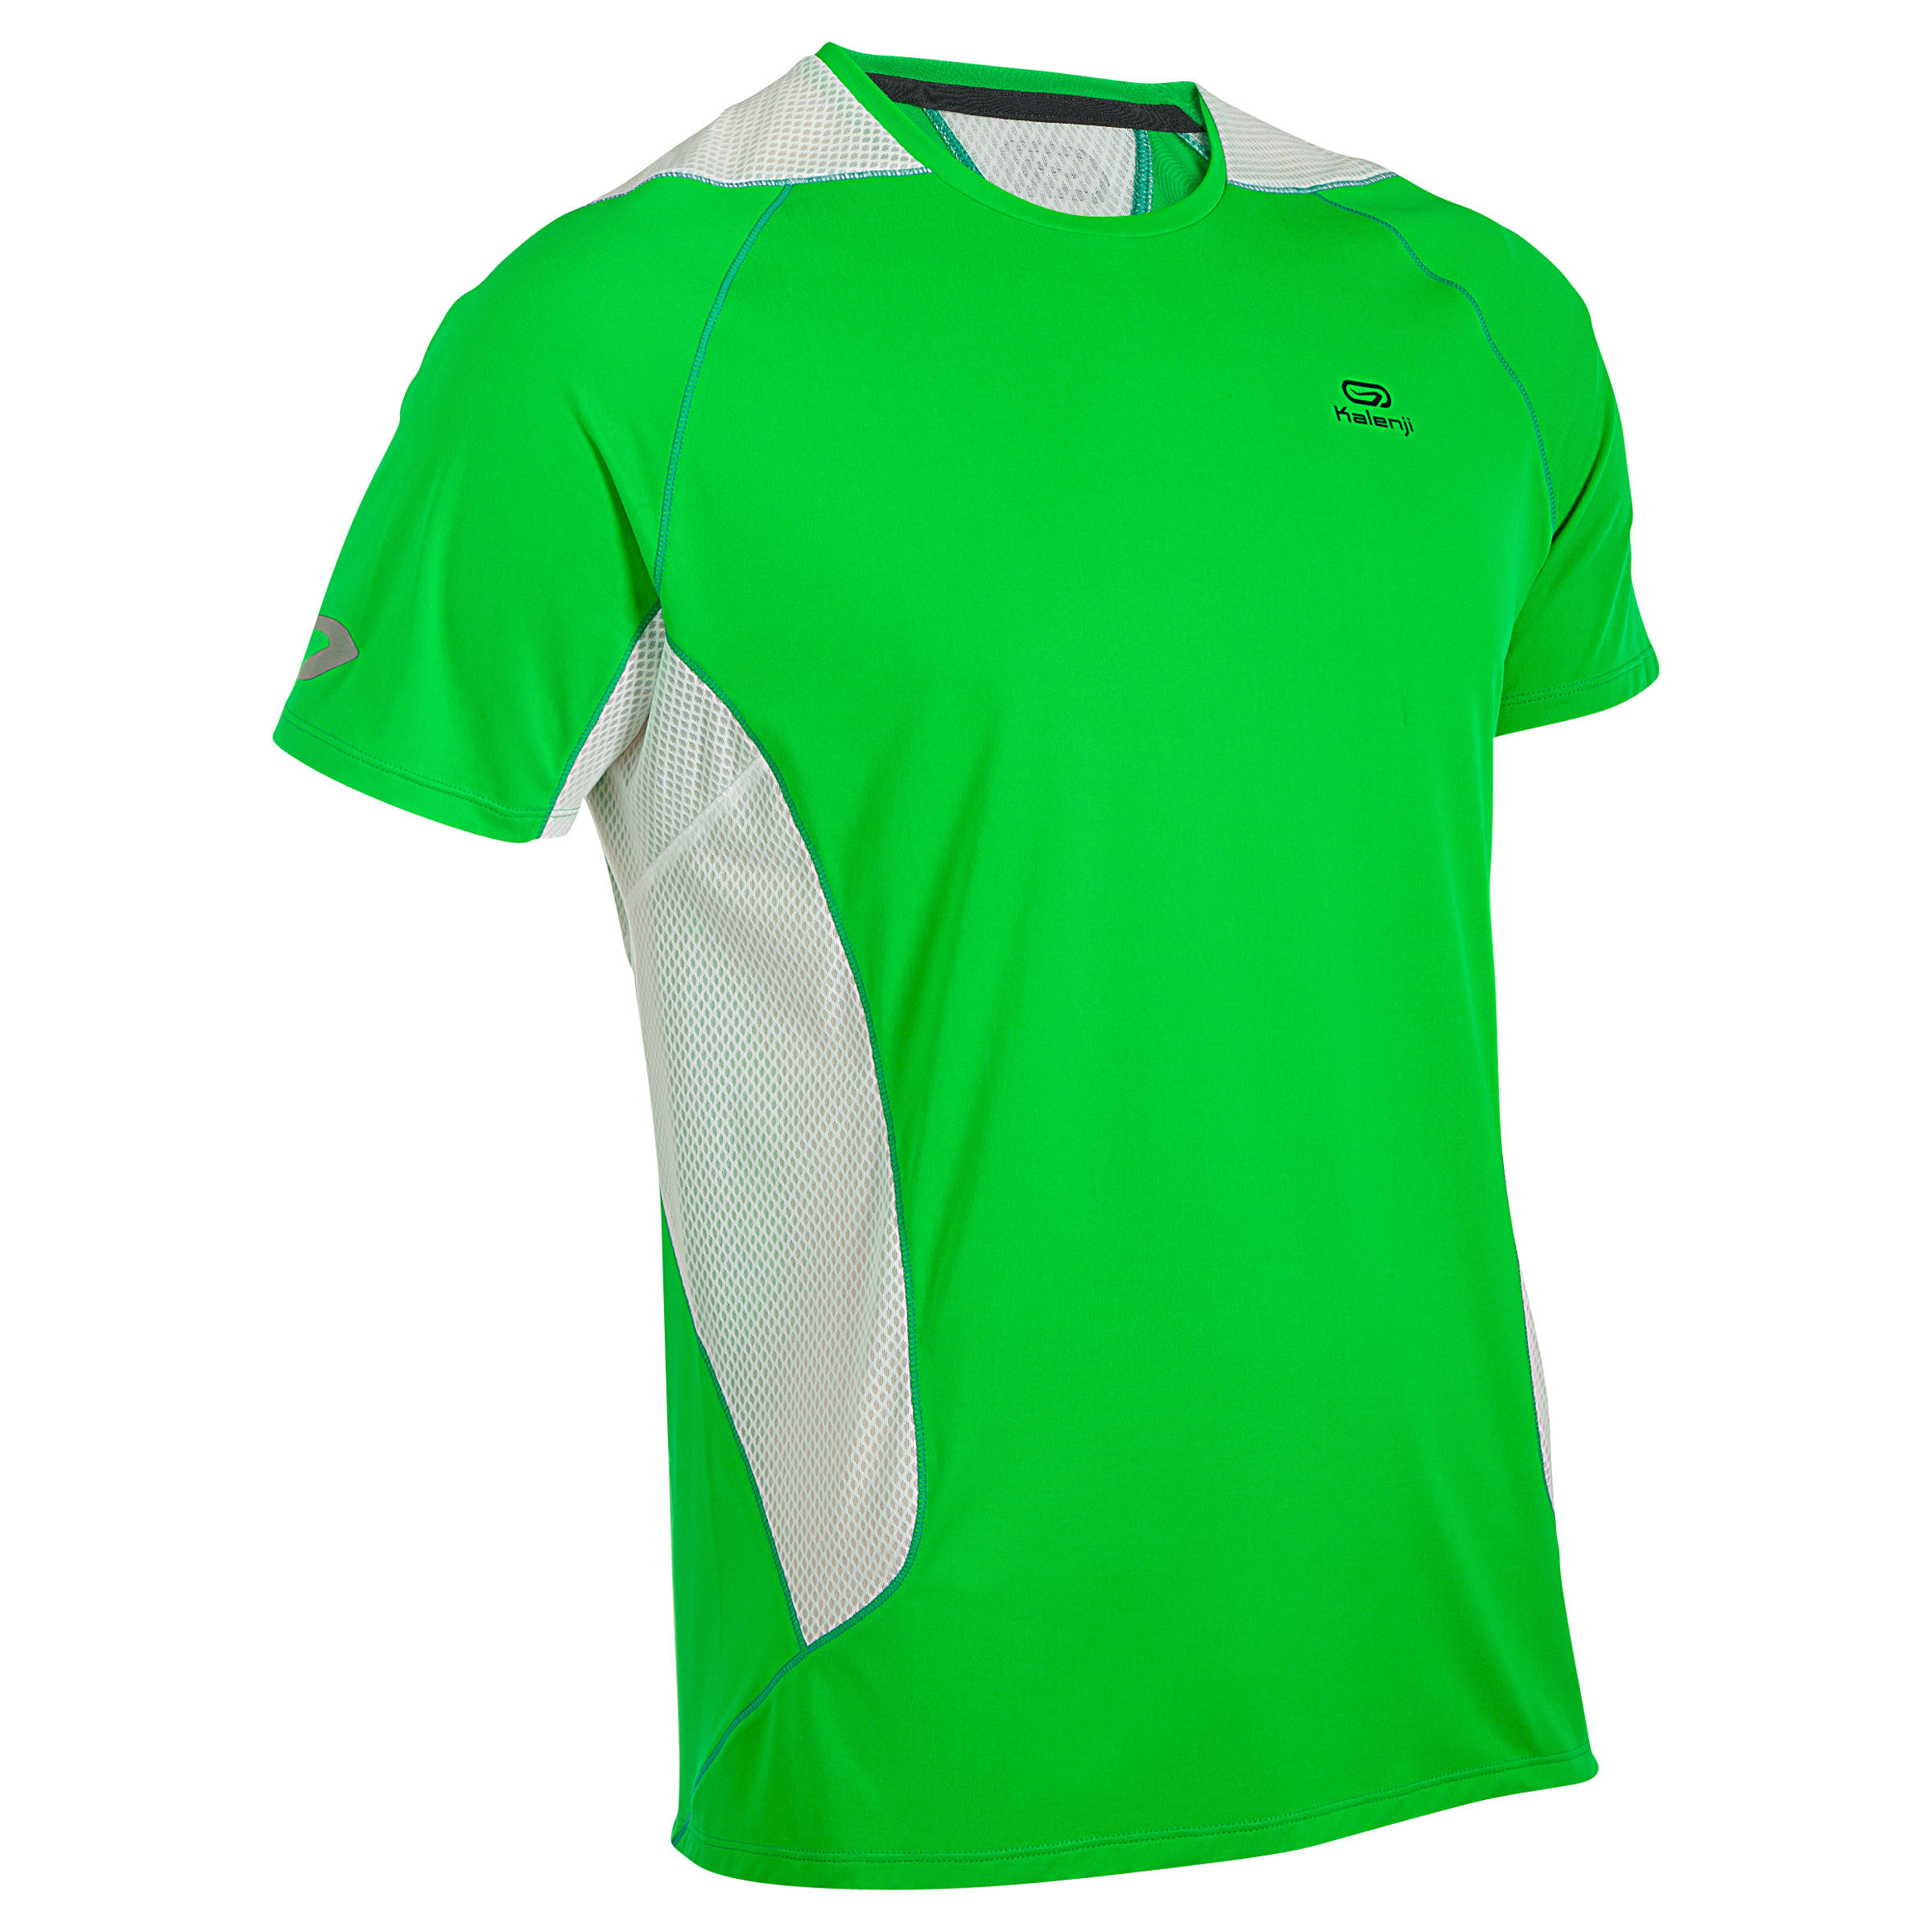 KALENJI Eliofeel Men's Running T-shirt - green white